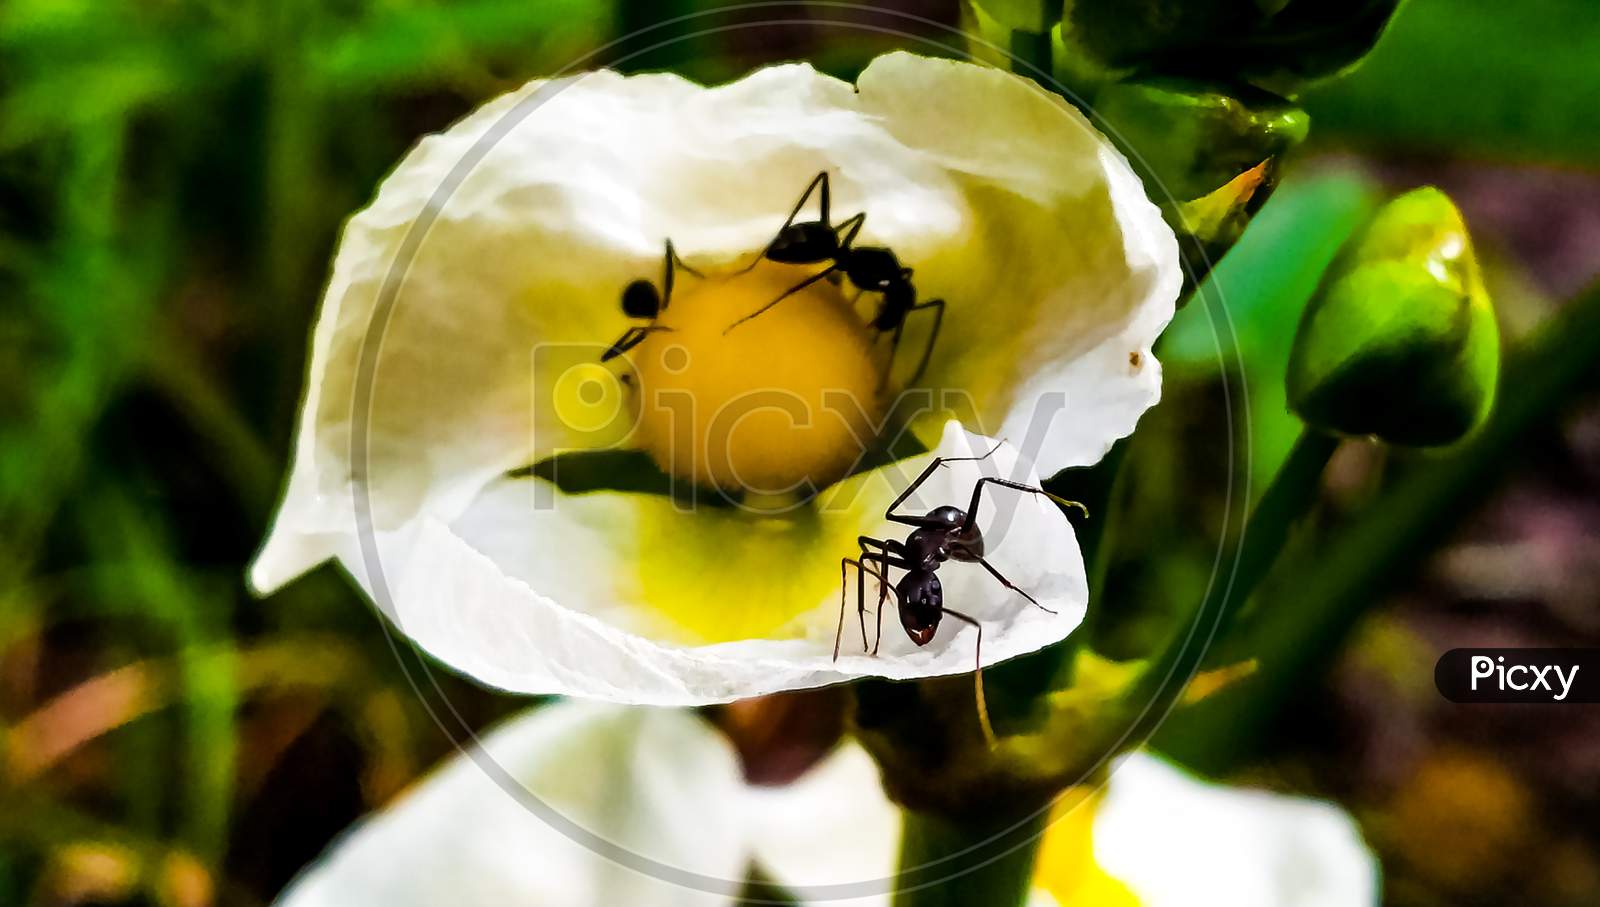 Black garden ant on a flower